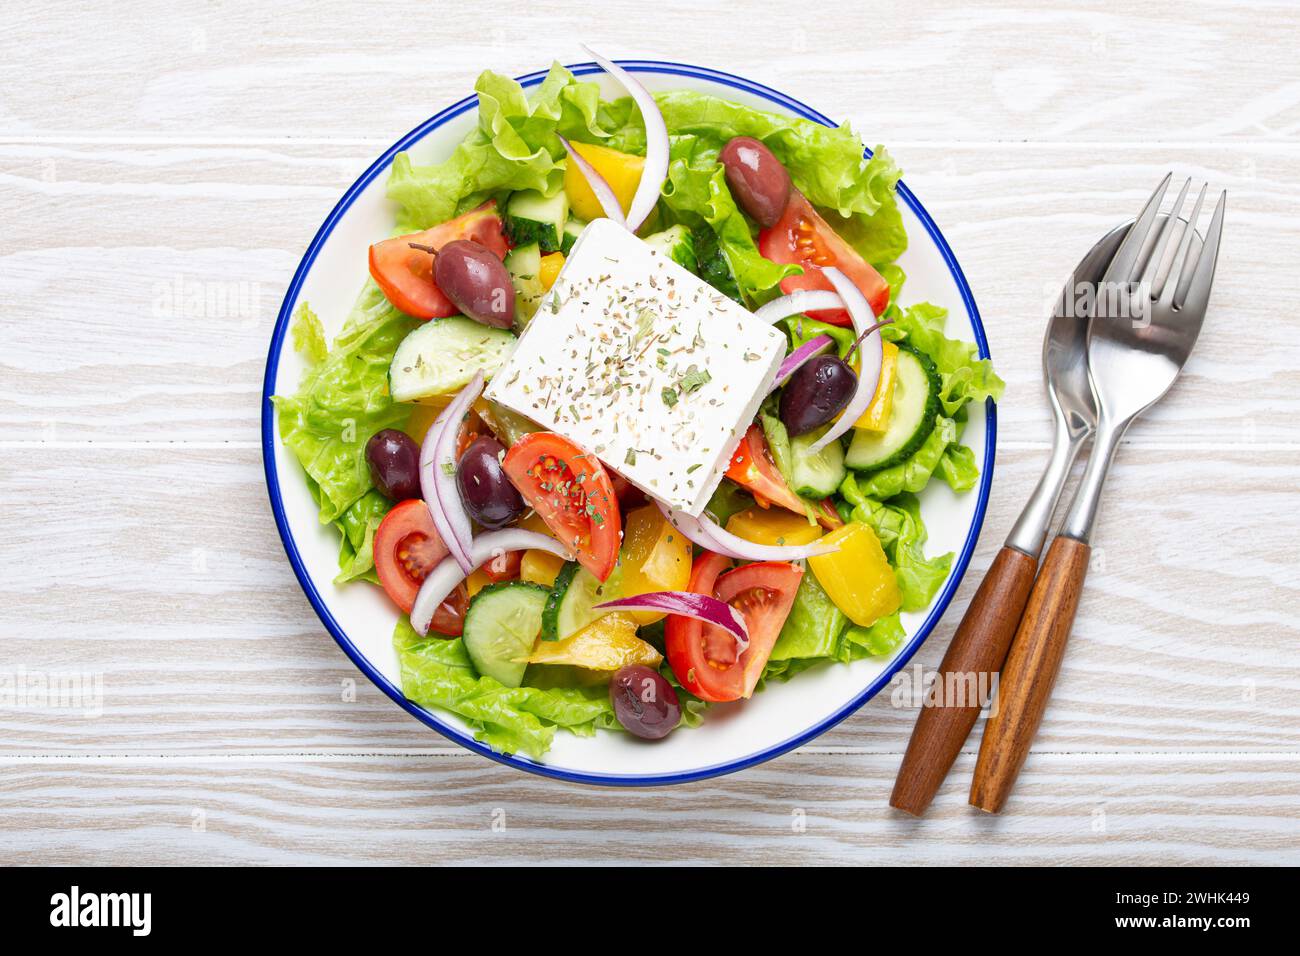 Salade grecque traditionnelle avec fromage Feta, tomates, poivron, concombres, olives, herbes dans un bol en céramique blanche sur blanc rustique Banque D'Images